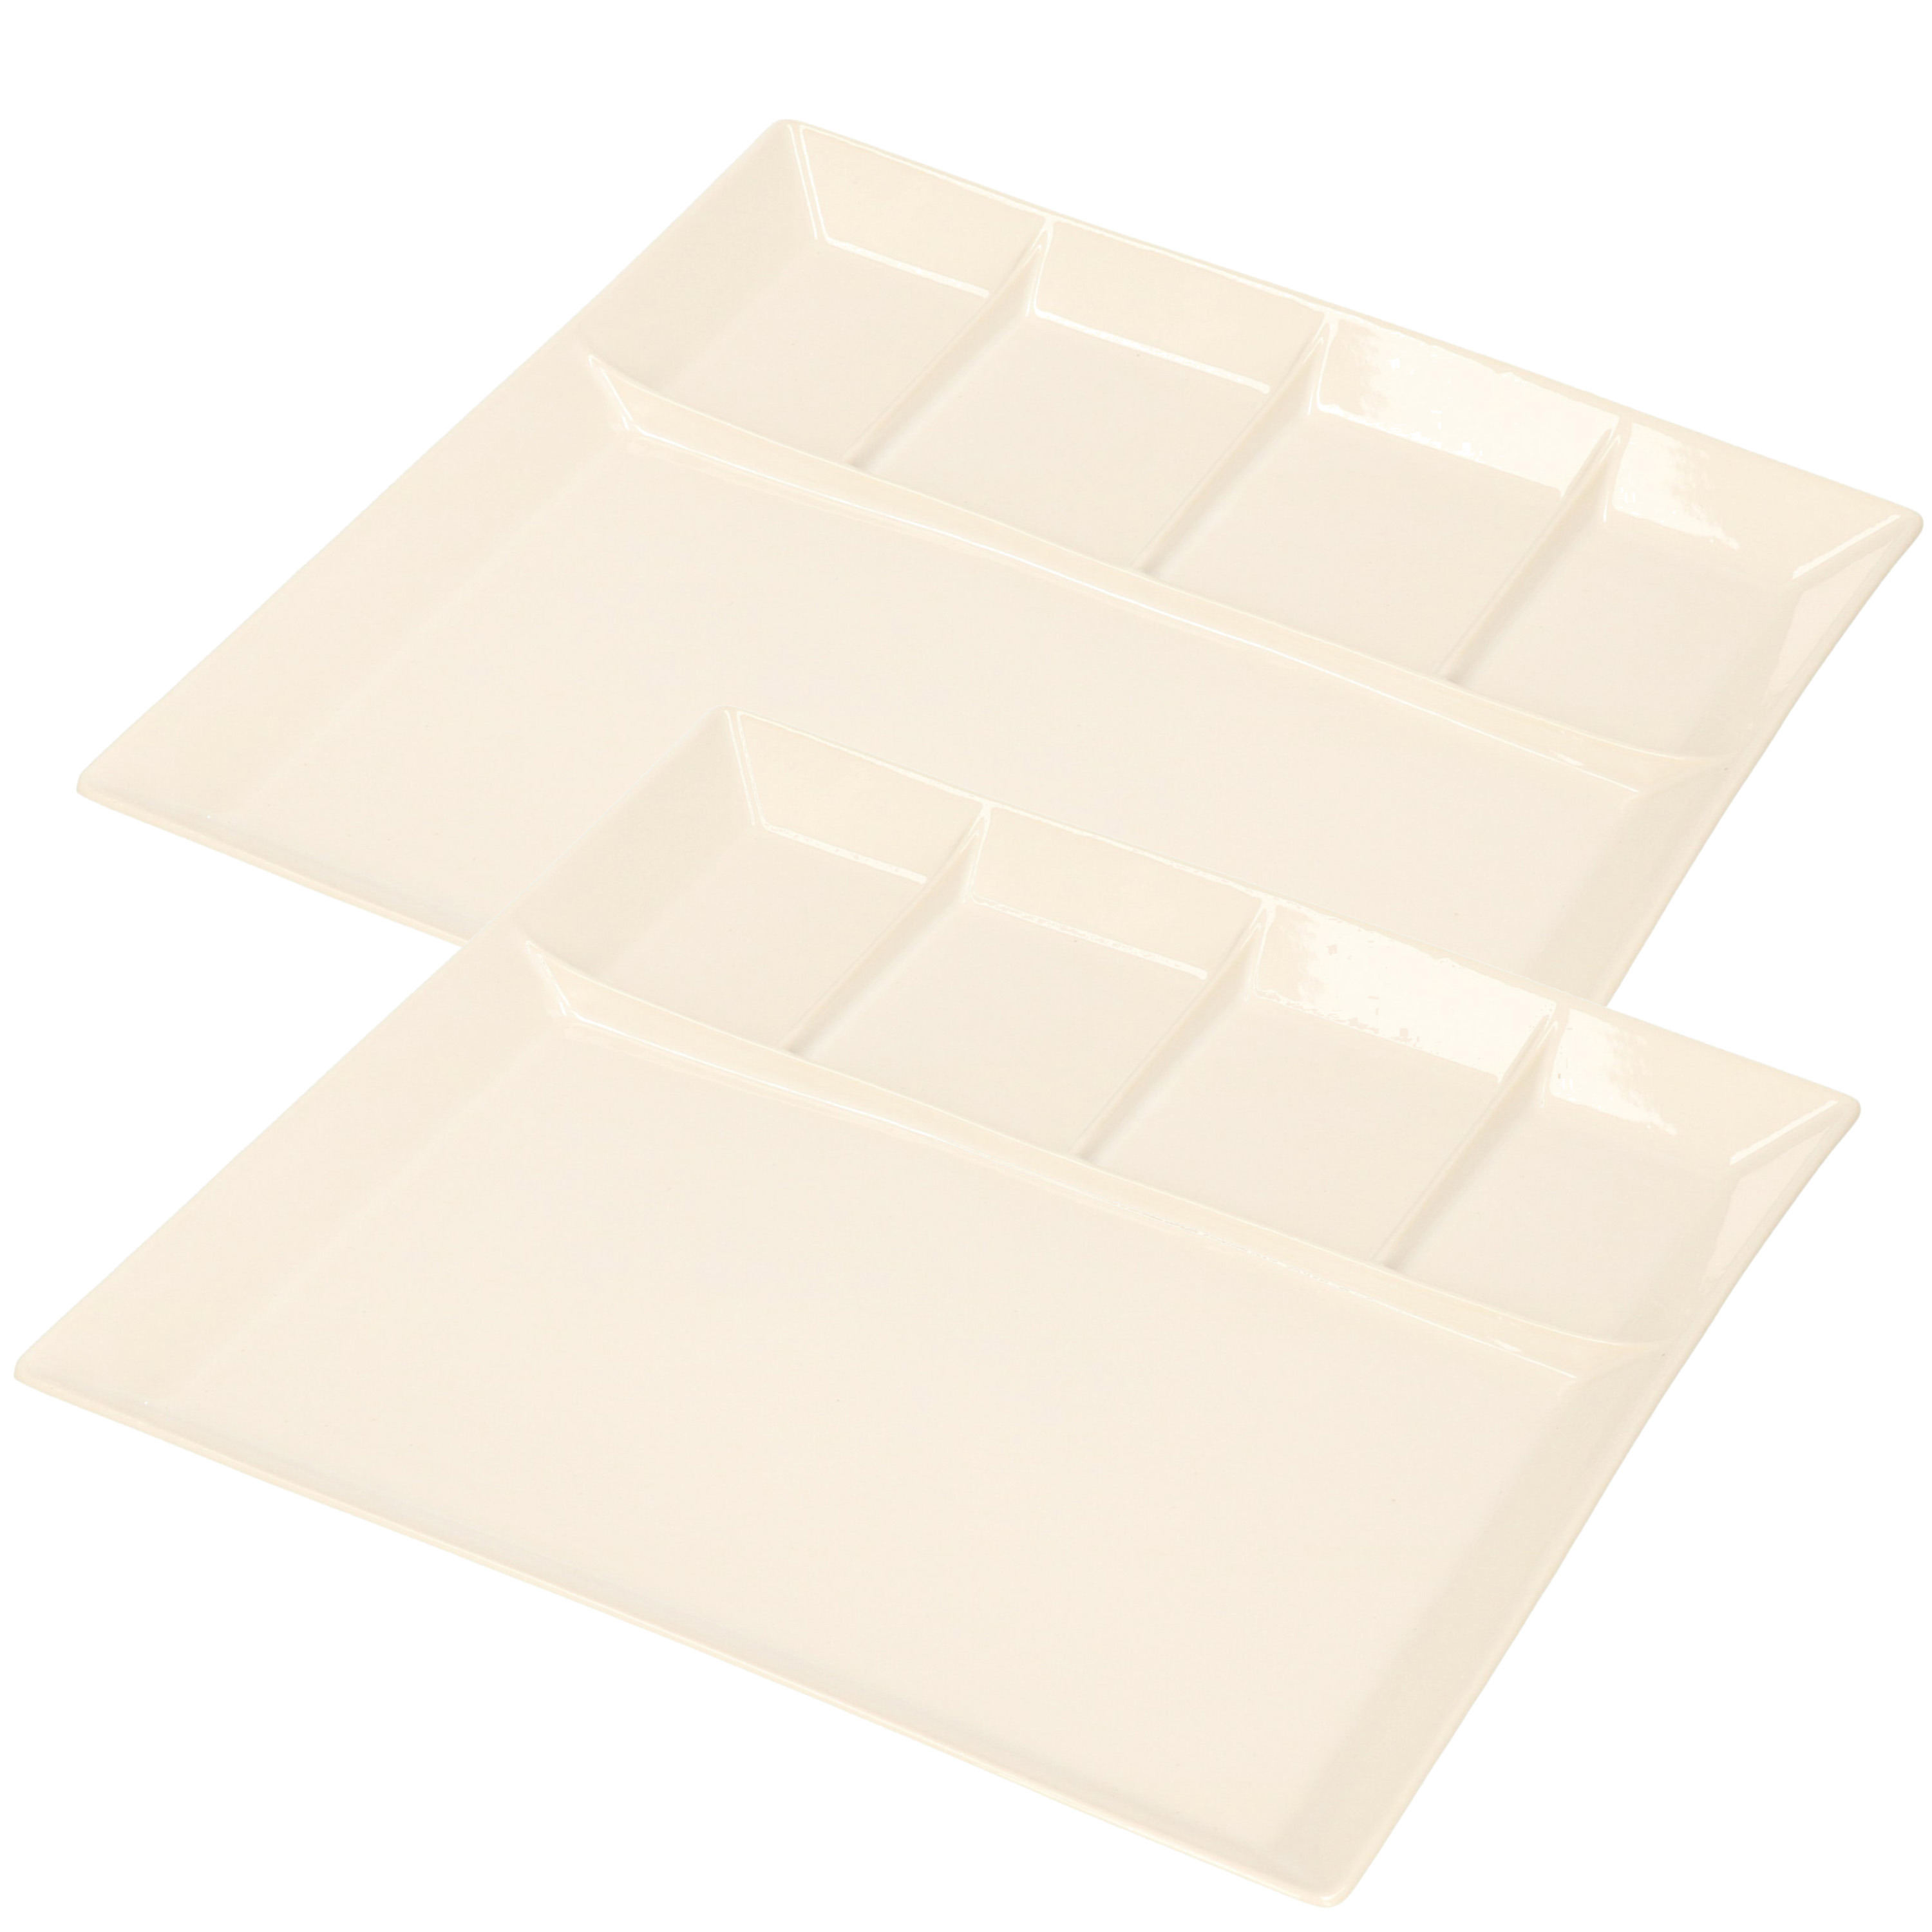 2x stuks wit fondue-gourmet bord 5-vaks vierkant aardewerk 24 cm